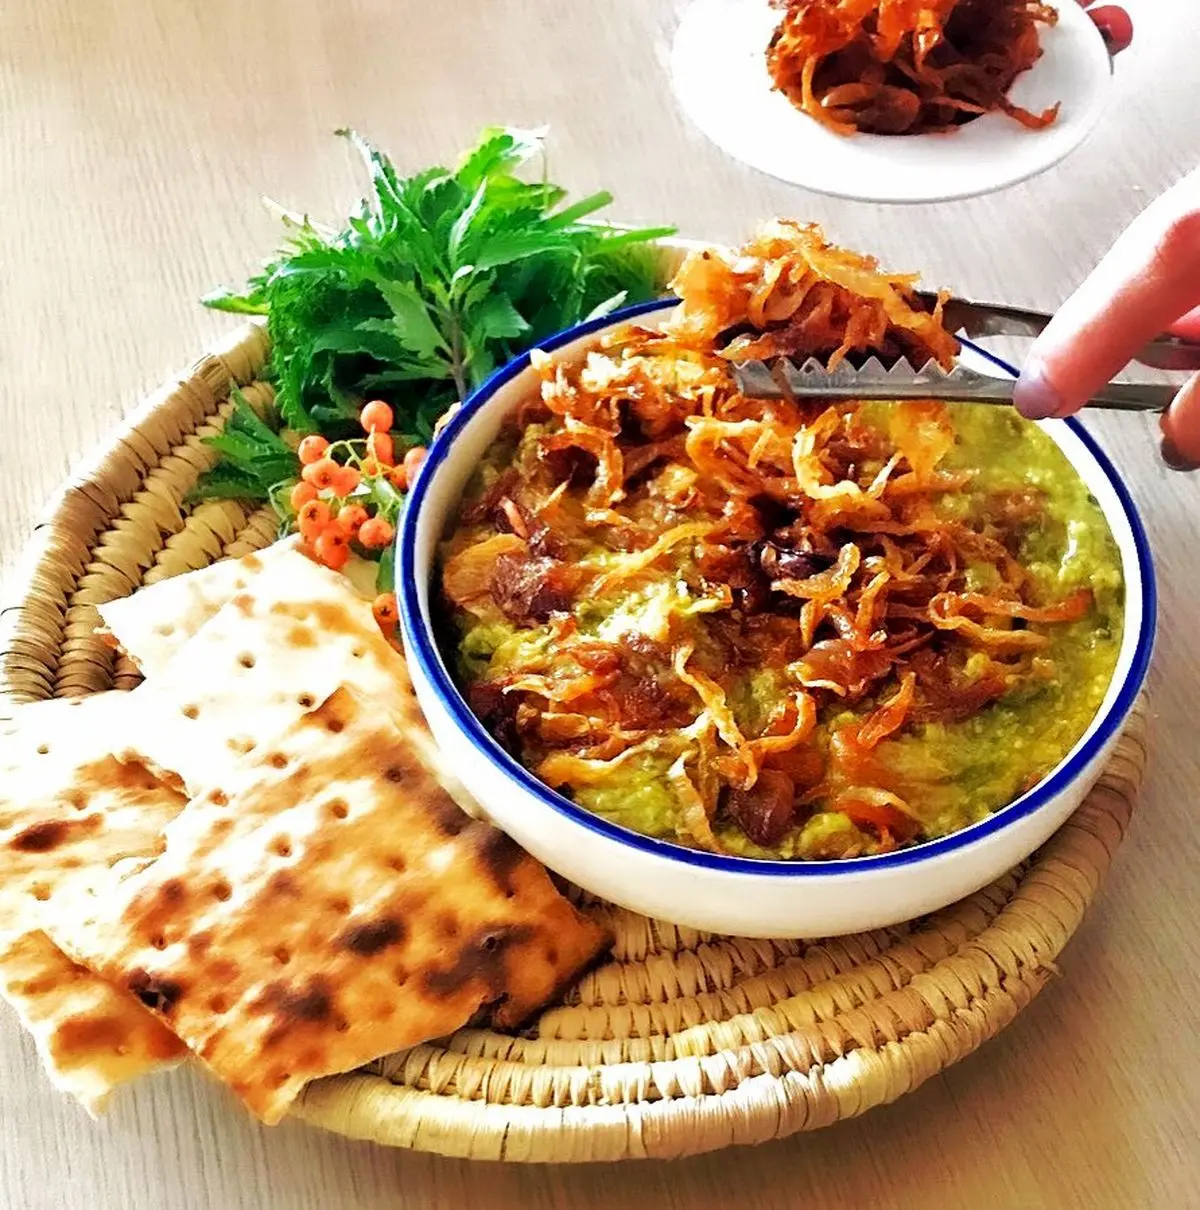 آش سنتی شیراز | طرز تهیه آش سبزی شیرازی